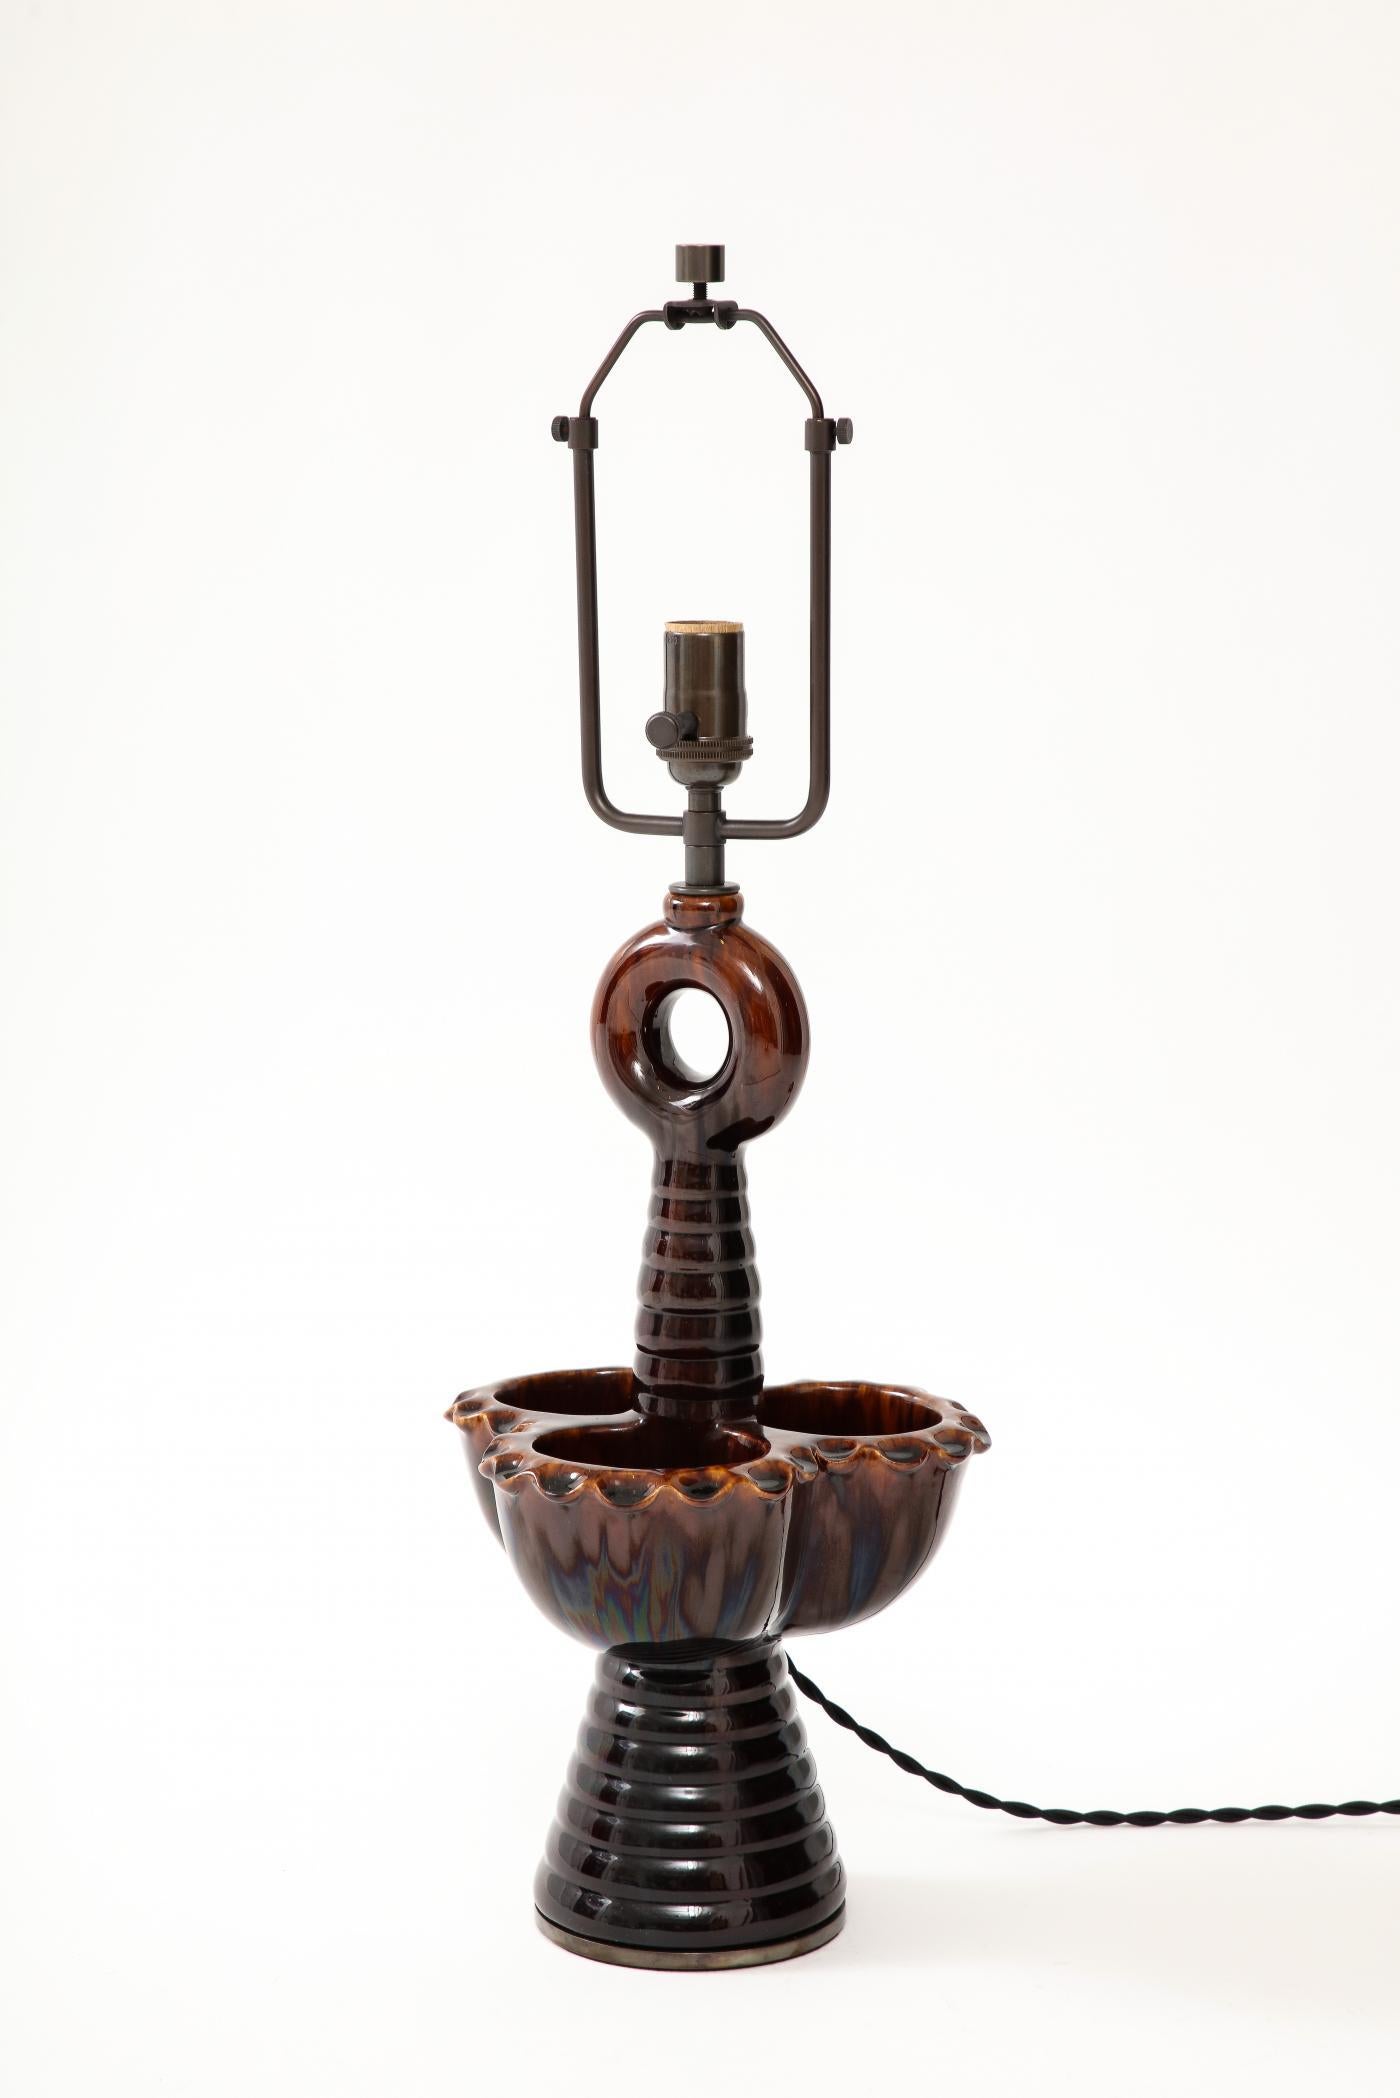 Sehr einzigartige Keramik-Tischlampe des französischen Bildhauers Louis Giraud. Die drei Becher, die den Rand bilden, können auch als Auffangbehälter dienen.

